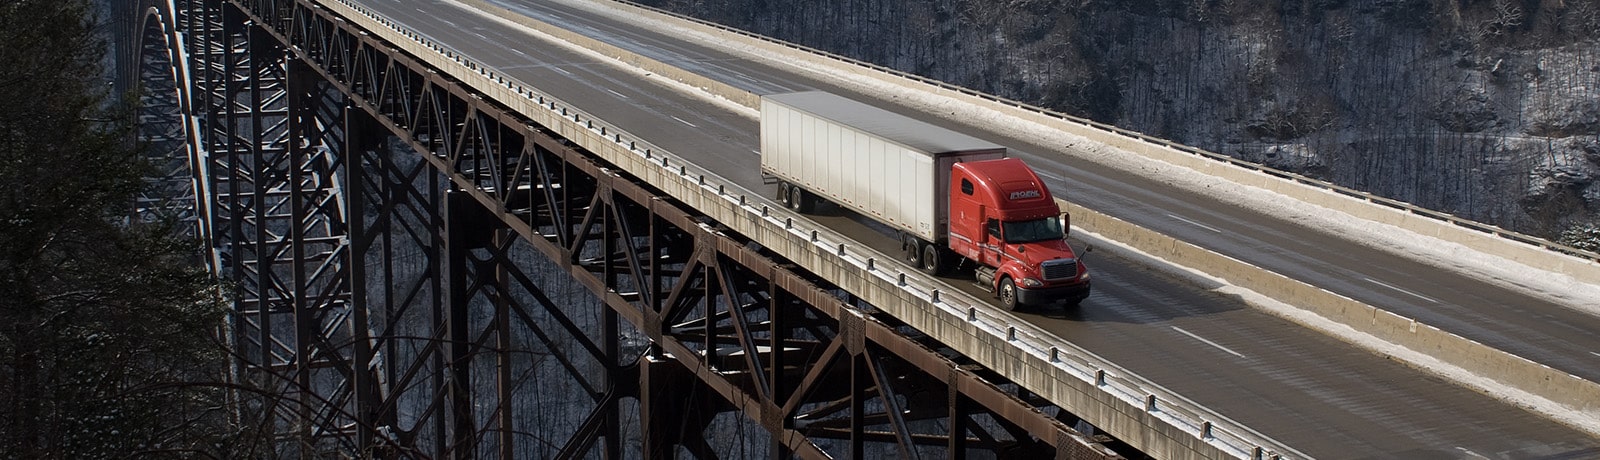 red semi truck on bridge